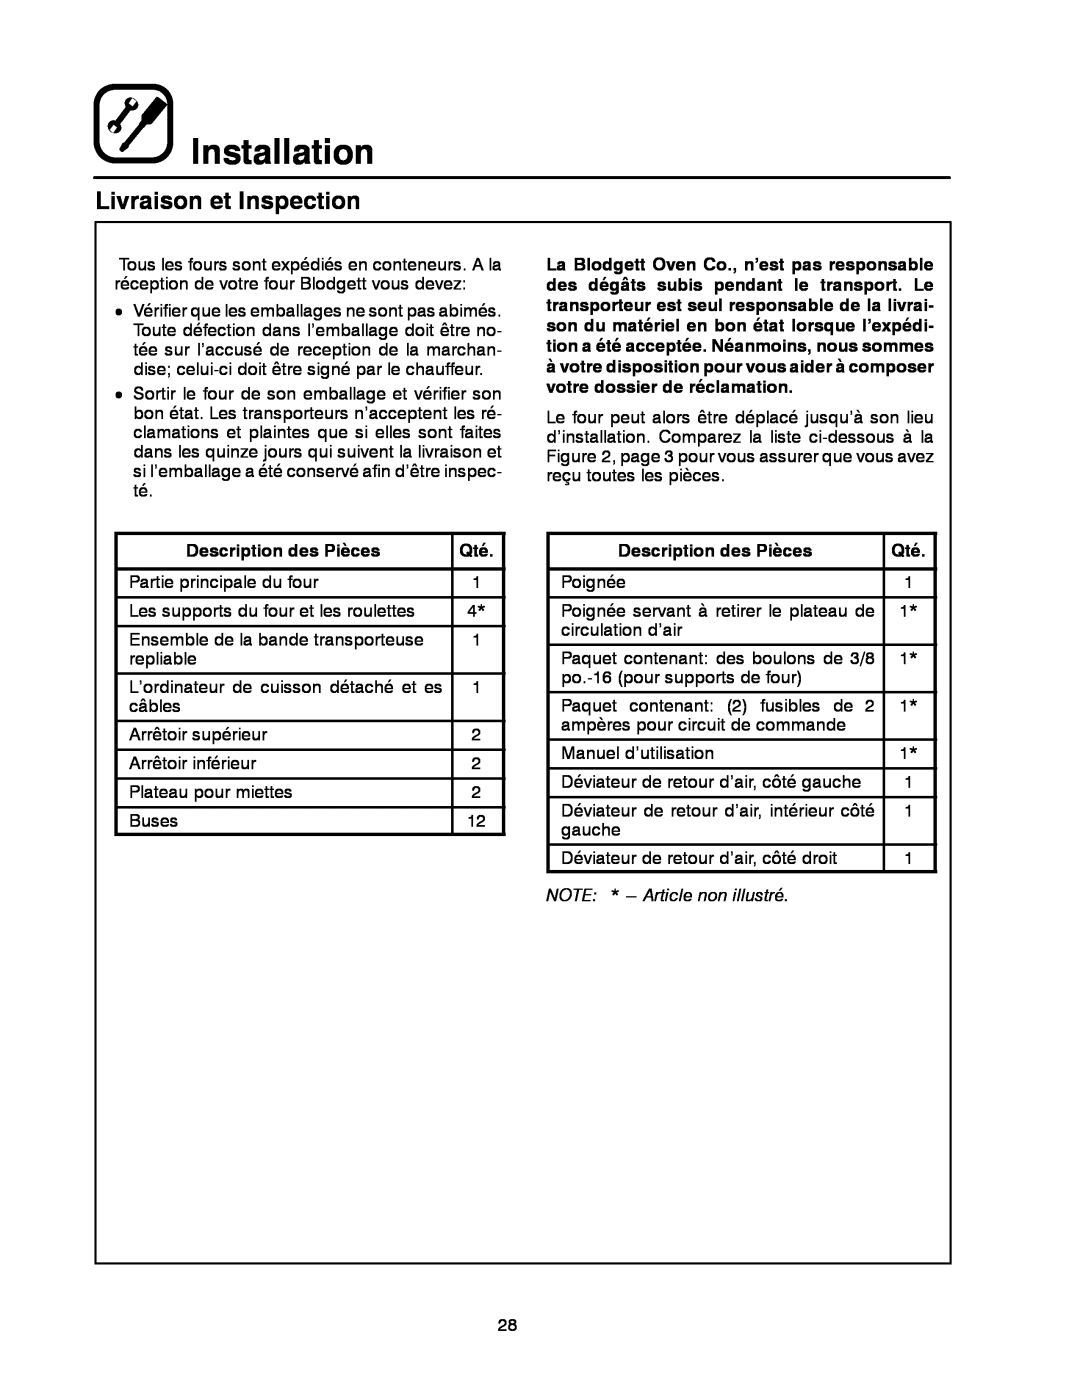 Blodgett MT3855G-G manual Livraison et Inspection, Installation, Description des Pièces, NOTE * --- Article non illustré 